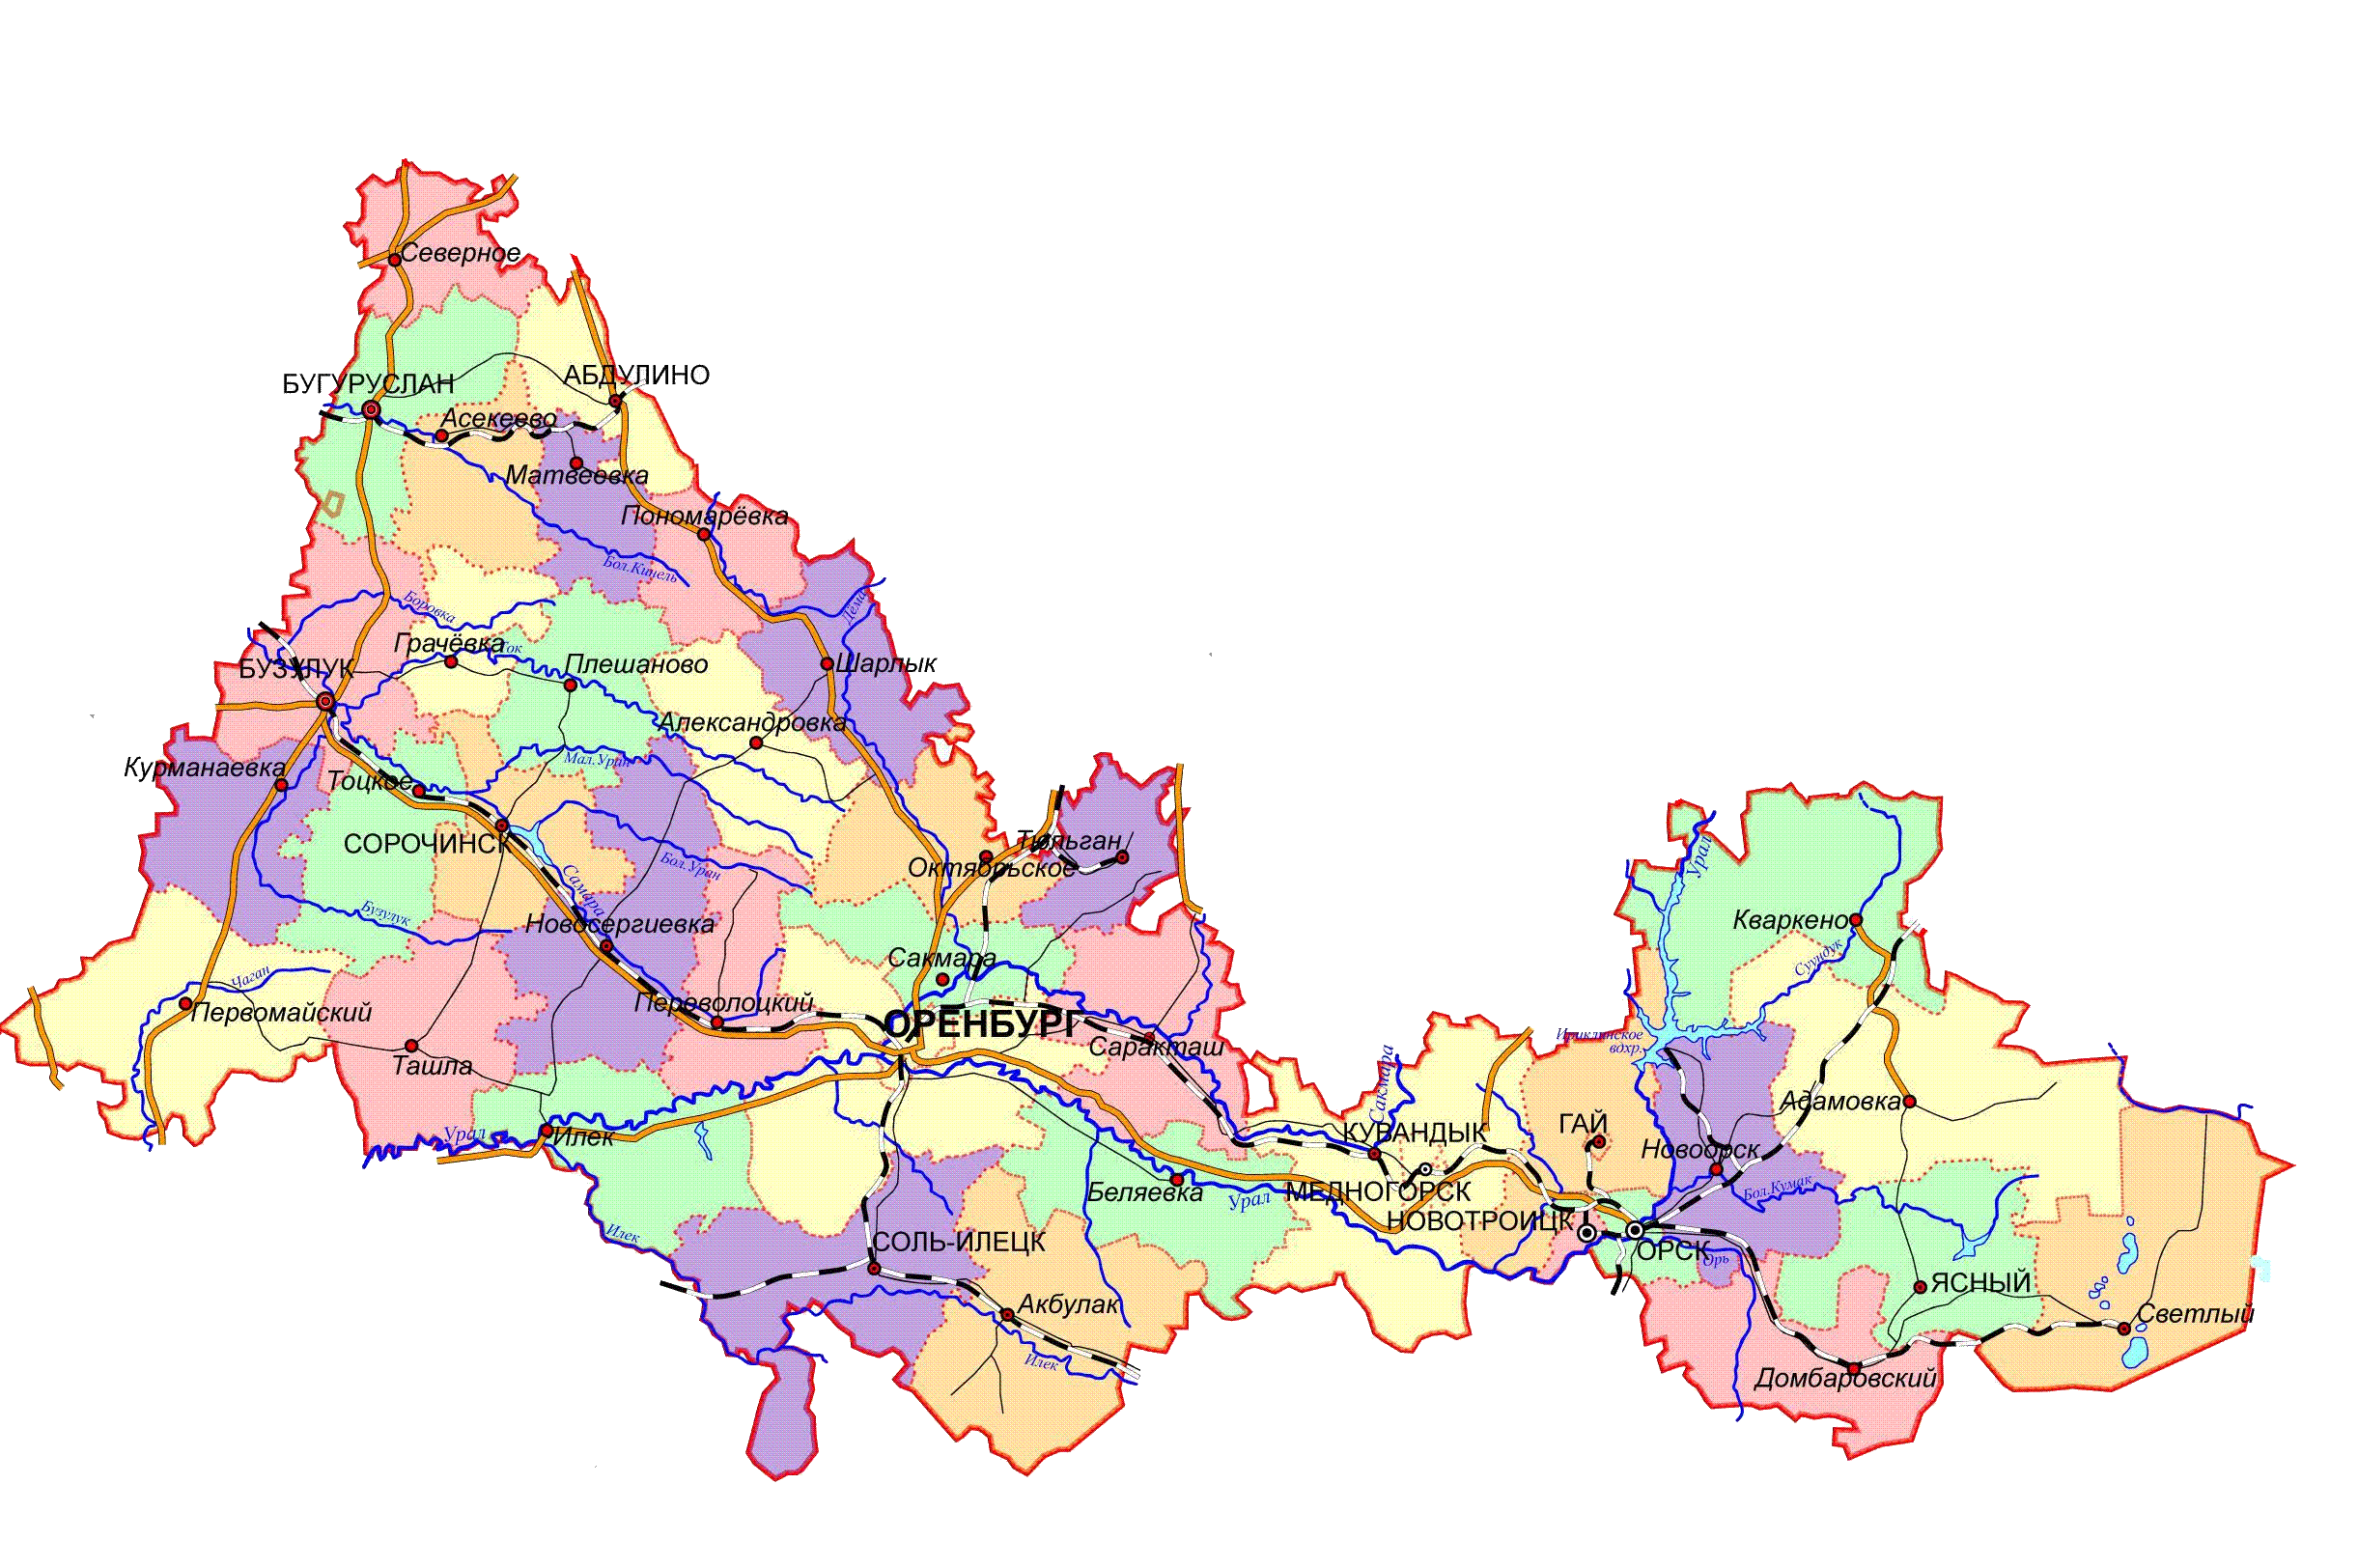 Карта Оренбургской области с районами. Карта Оренбургской области с границами районов. Карта Оренбургского района Оренбургской области. Карта Оренбургской области с районами и населенными пунктами.